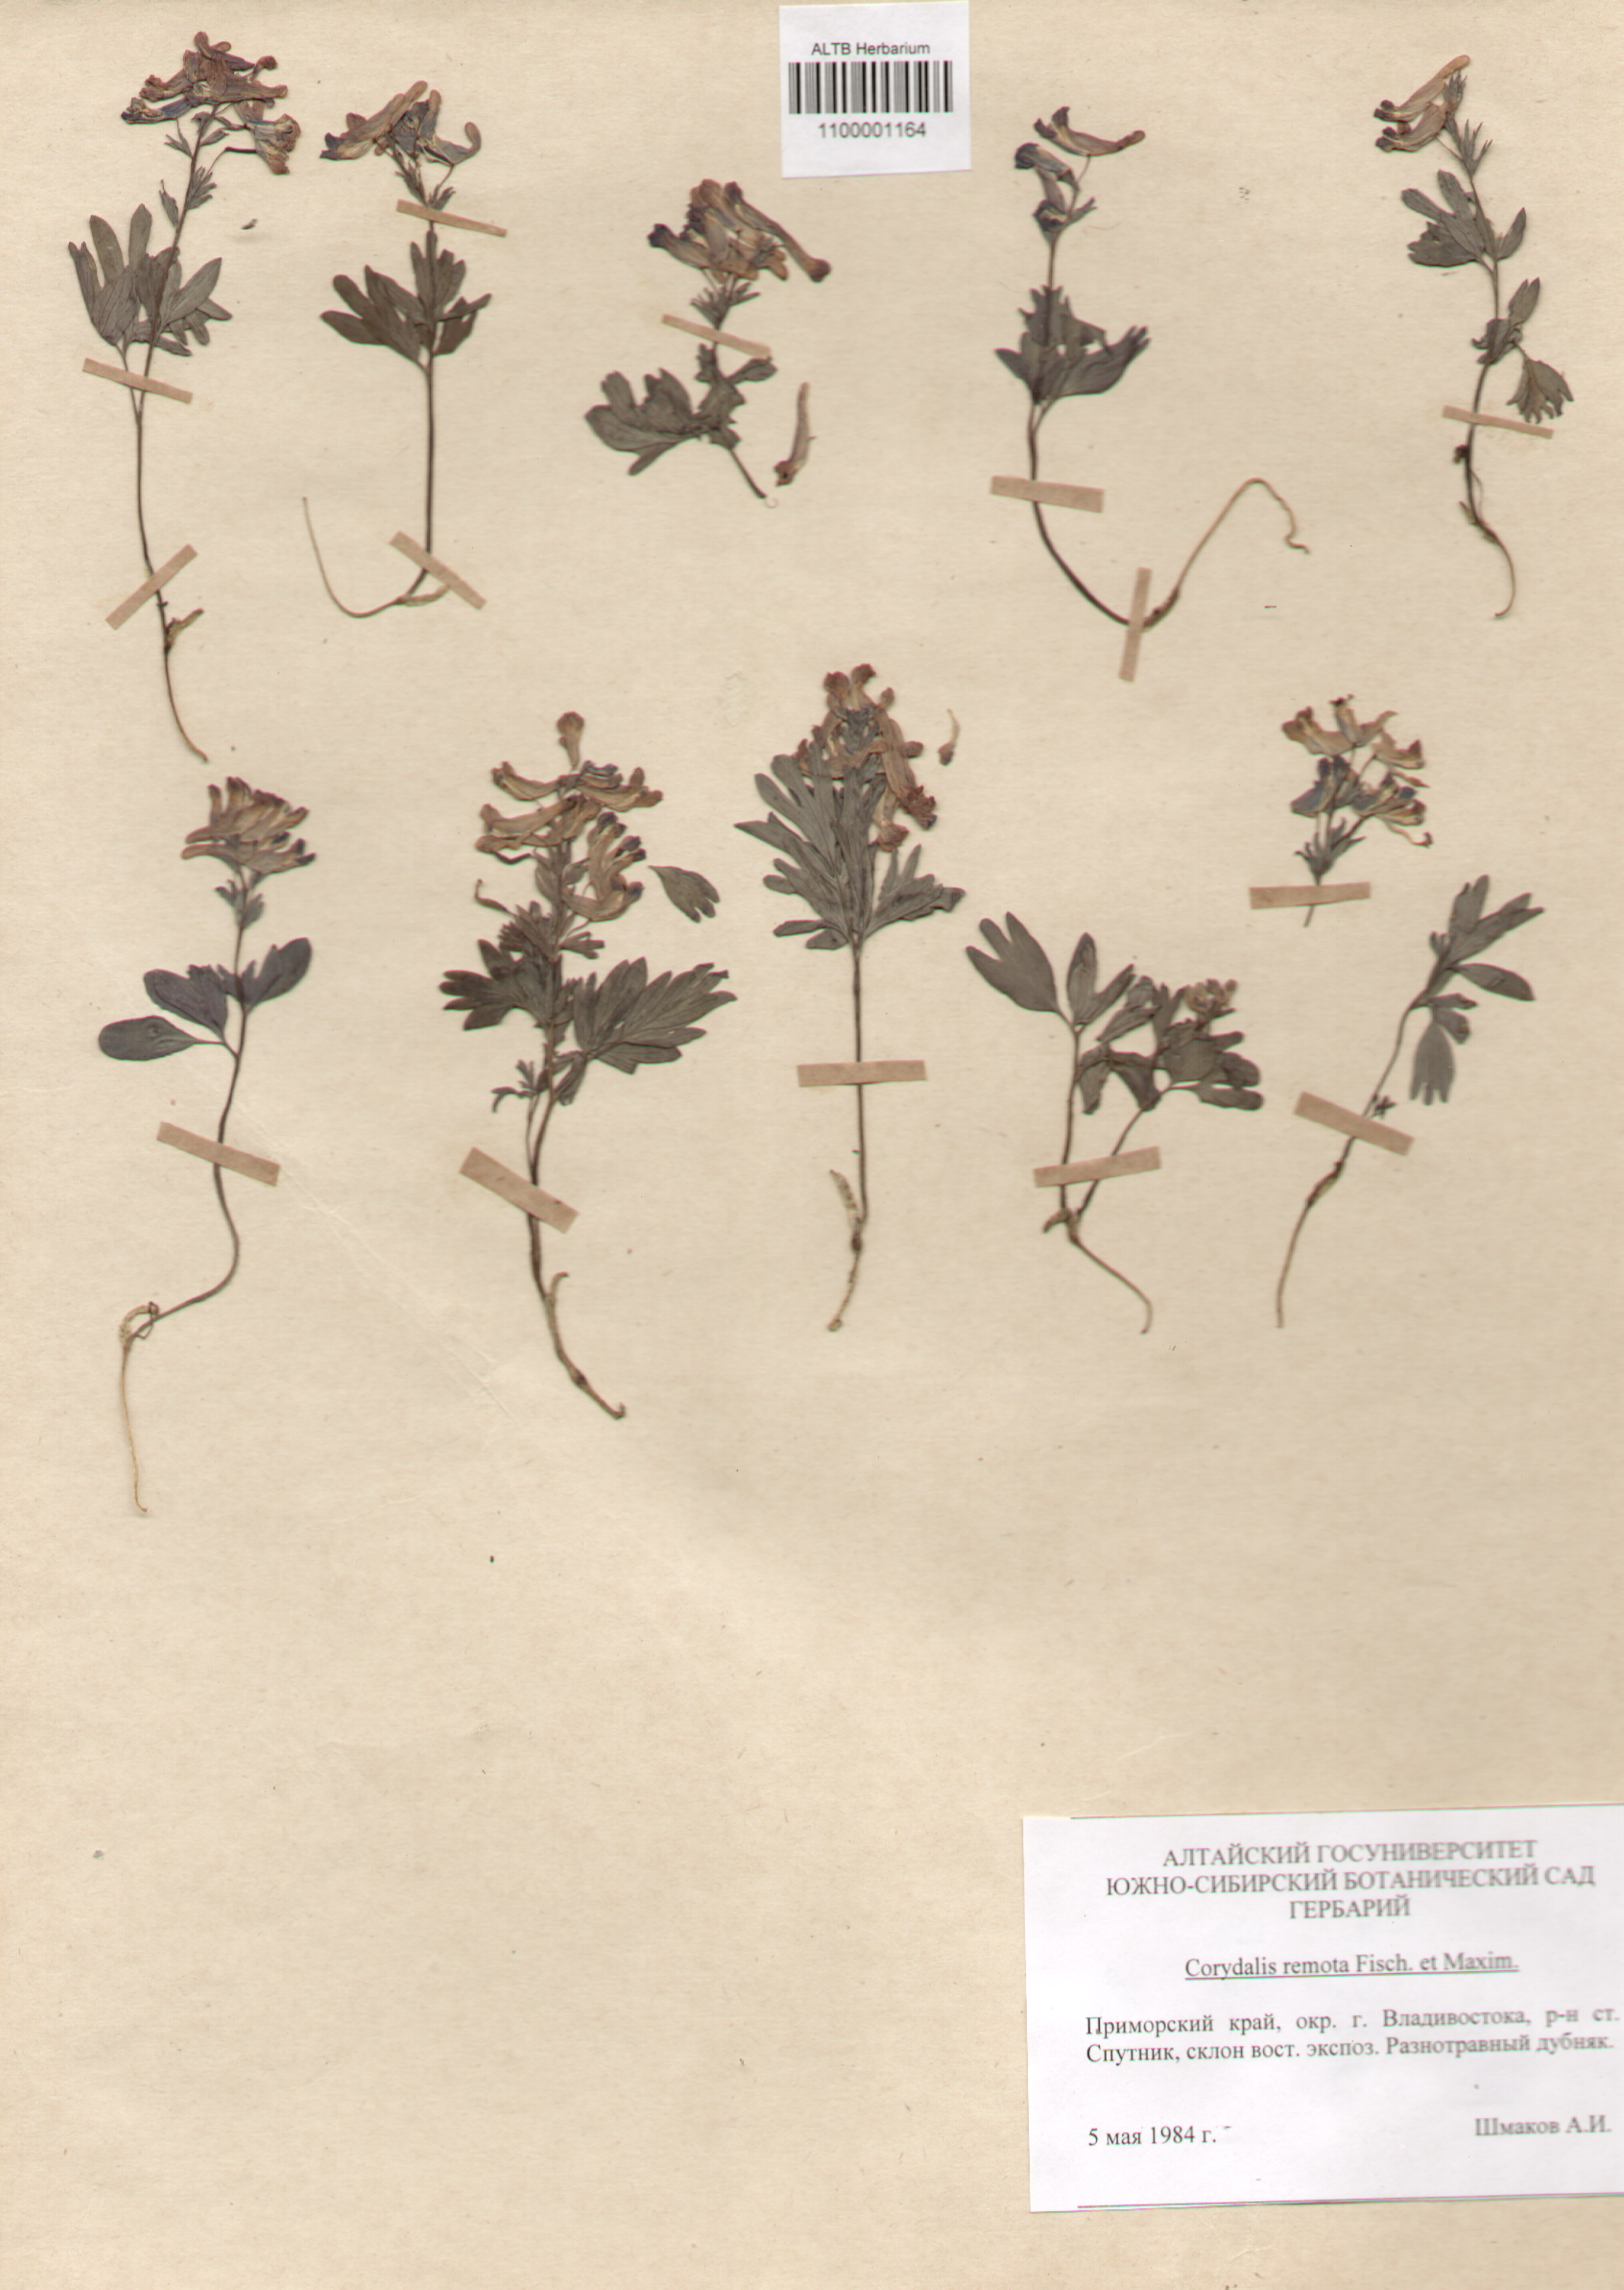 Fumariaceae,Corydalis remota Fisch. et Maxim.